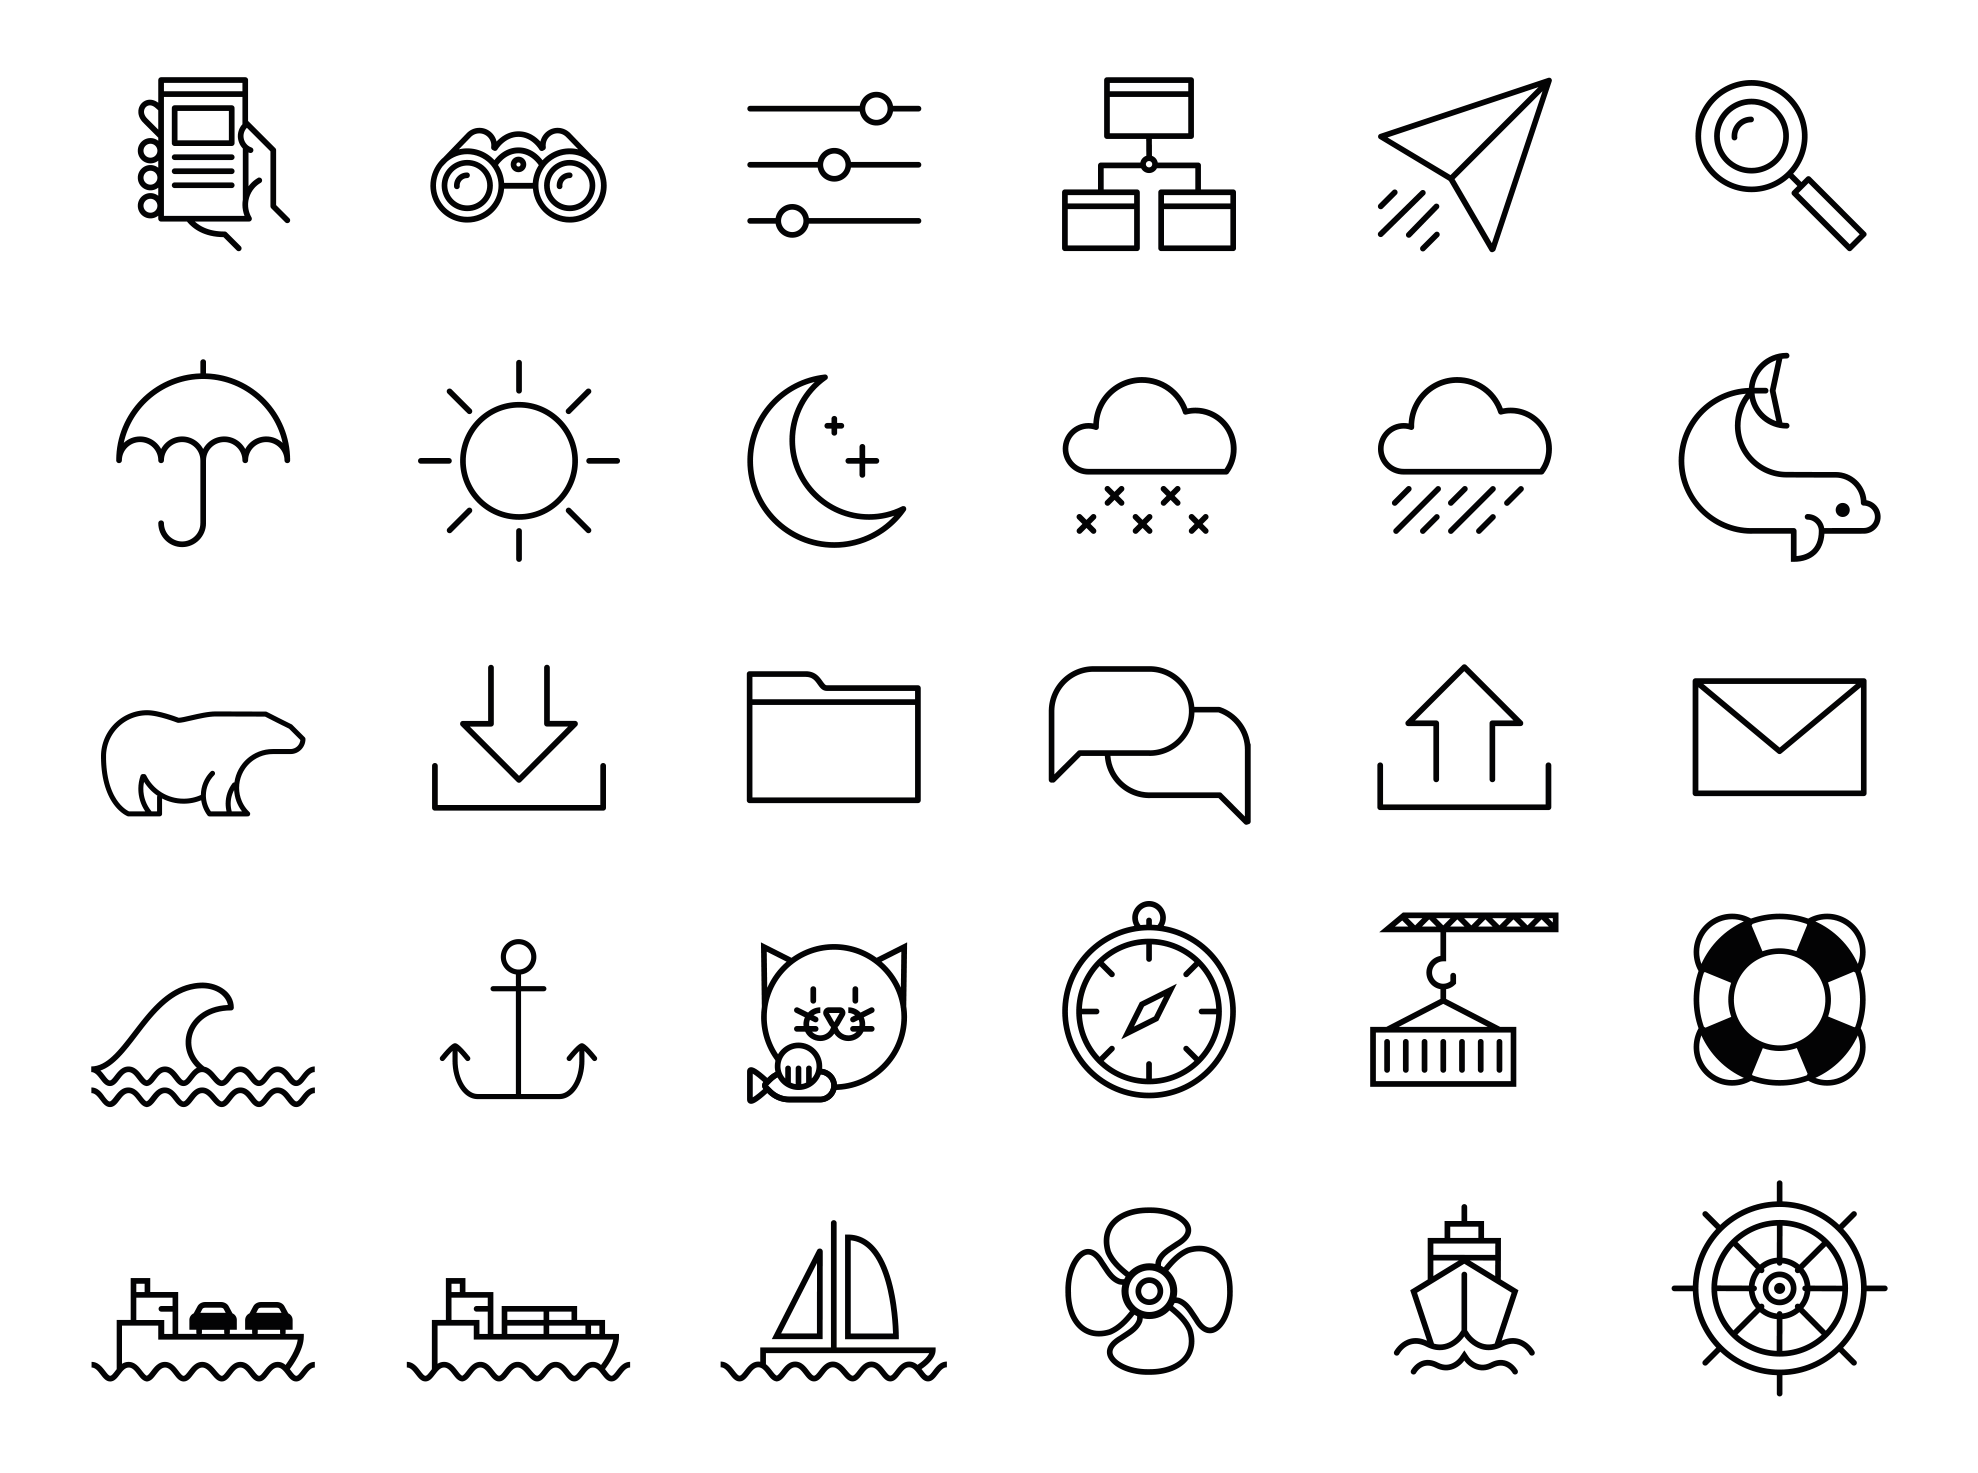 Eine Ansicht von 30 verschiedenen Icons